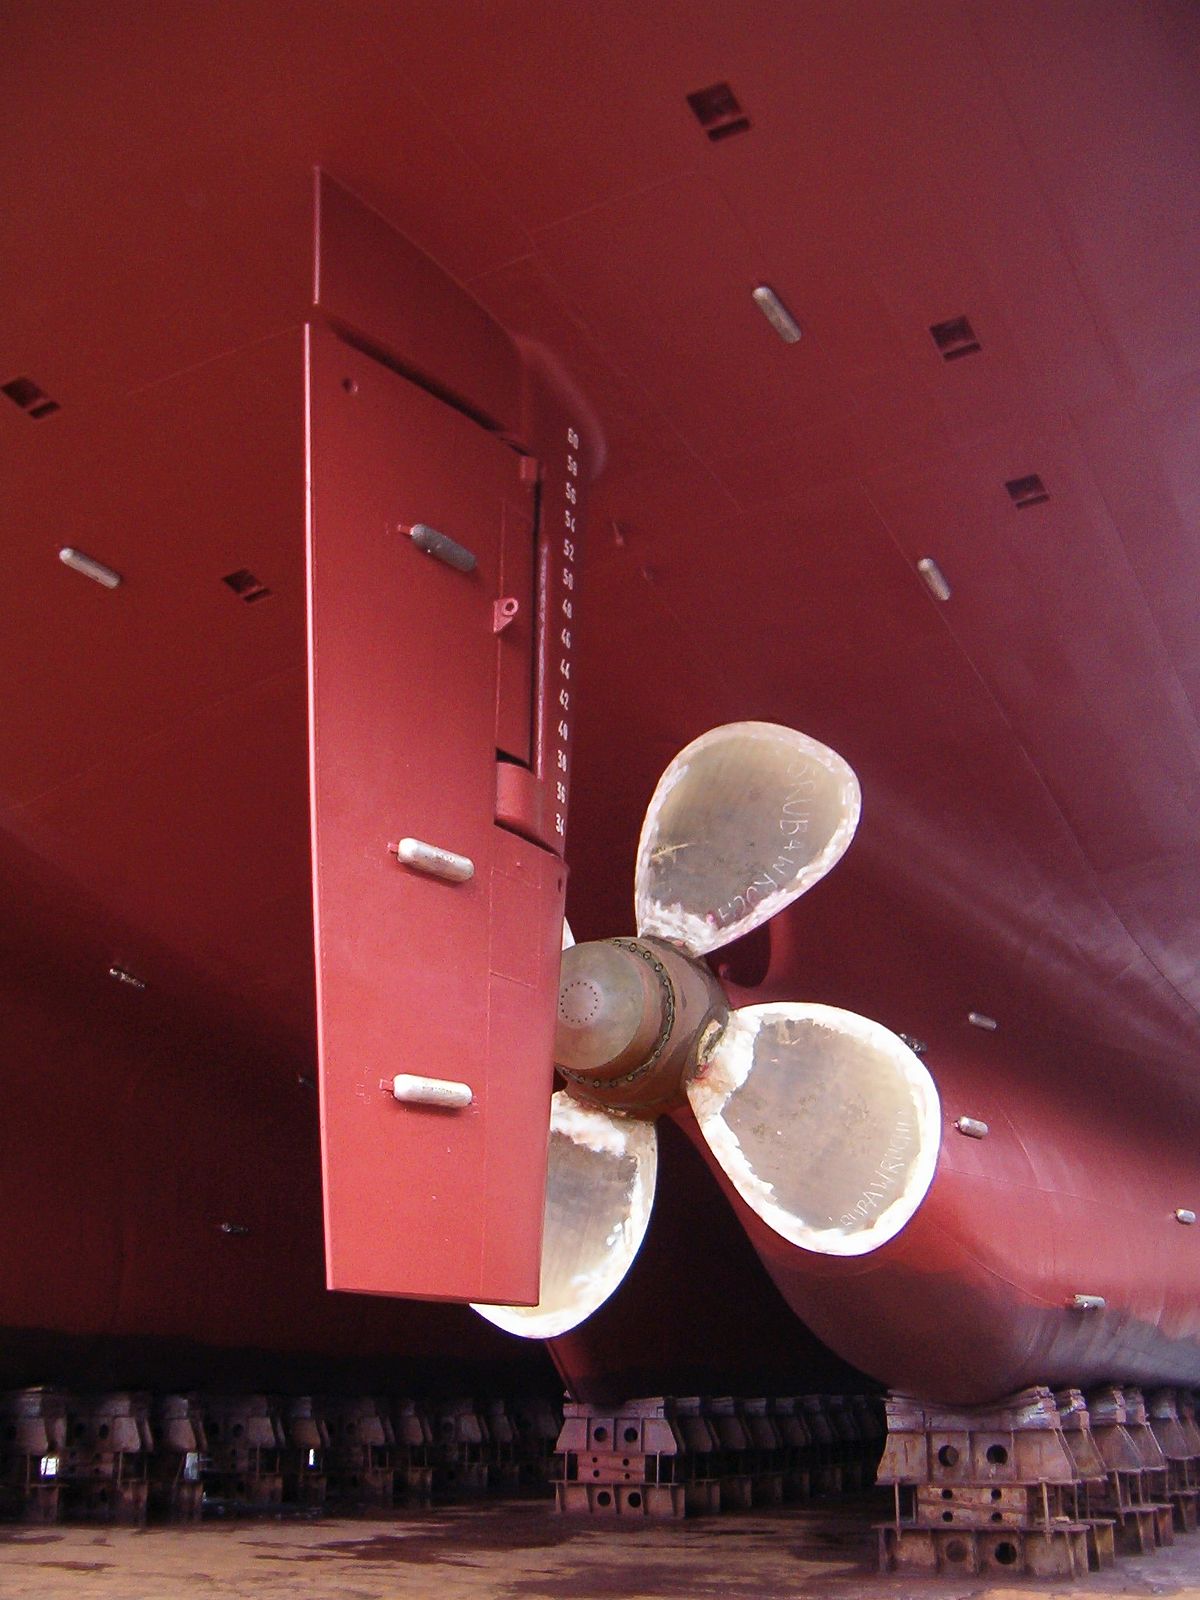 rudder of a ship